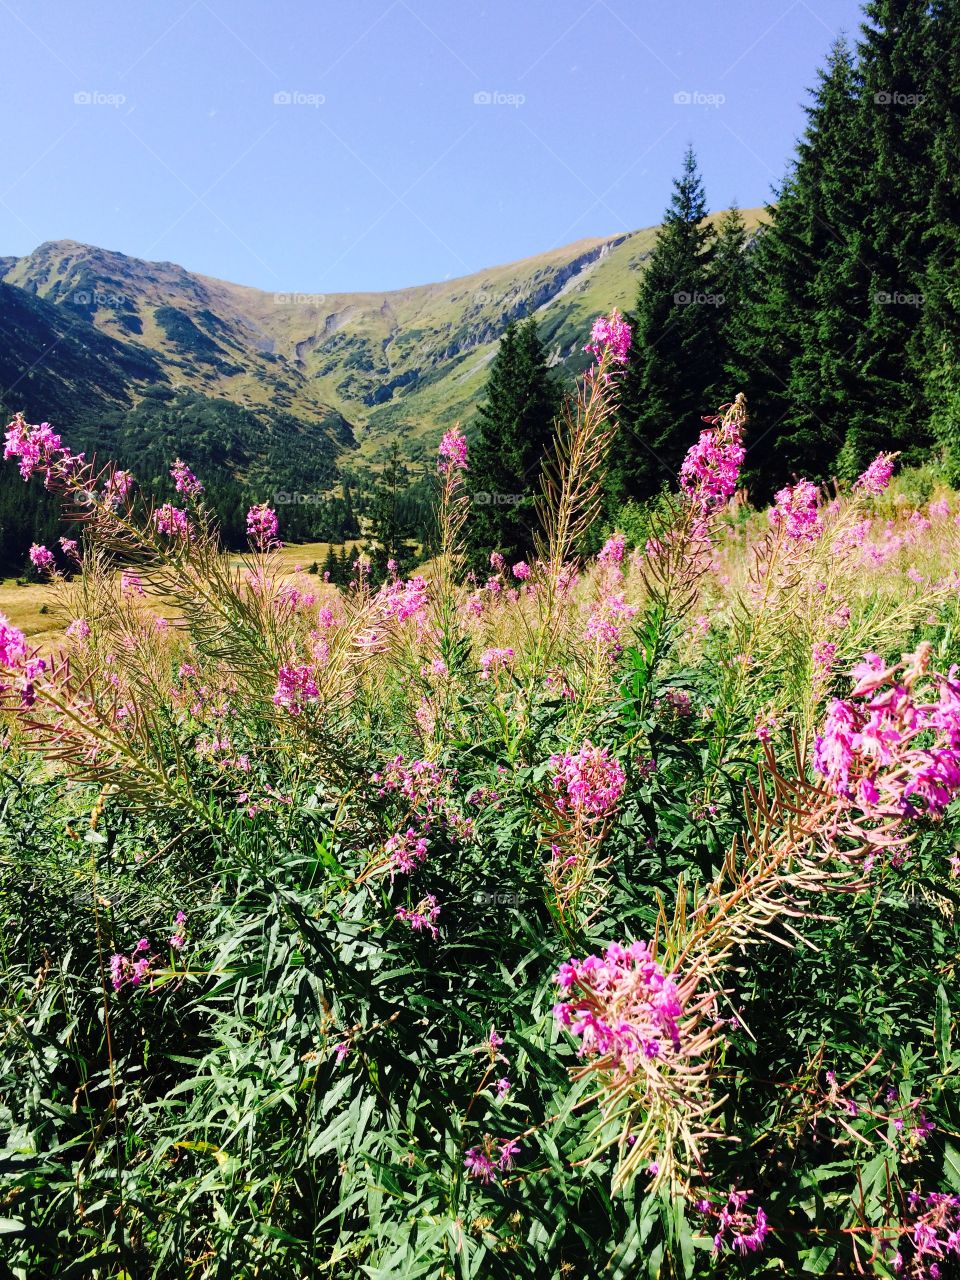 Flower field in the mountain